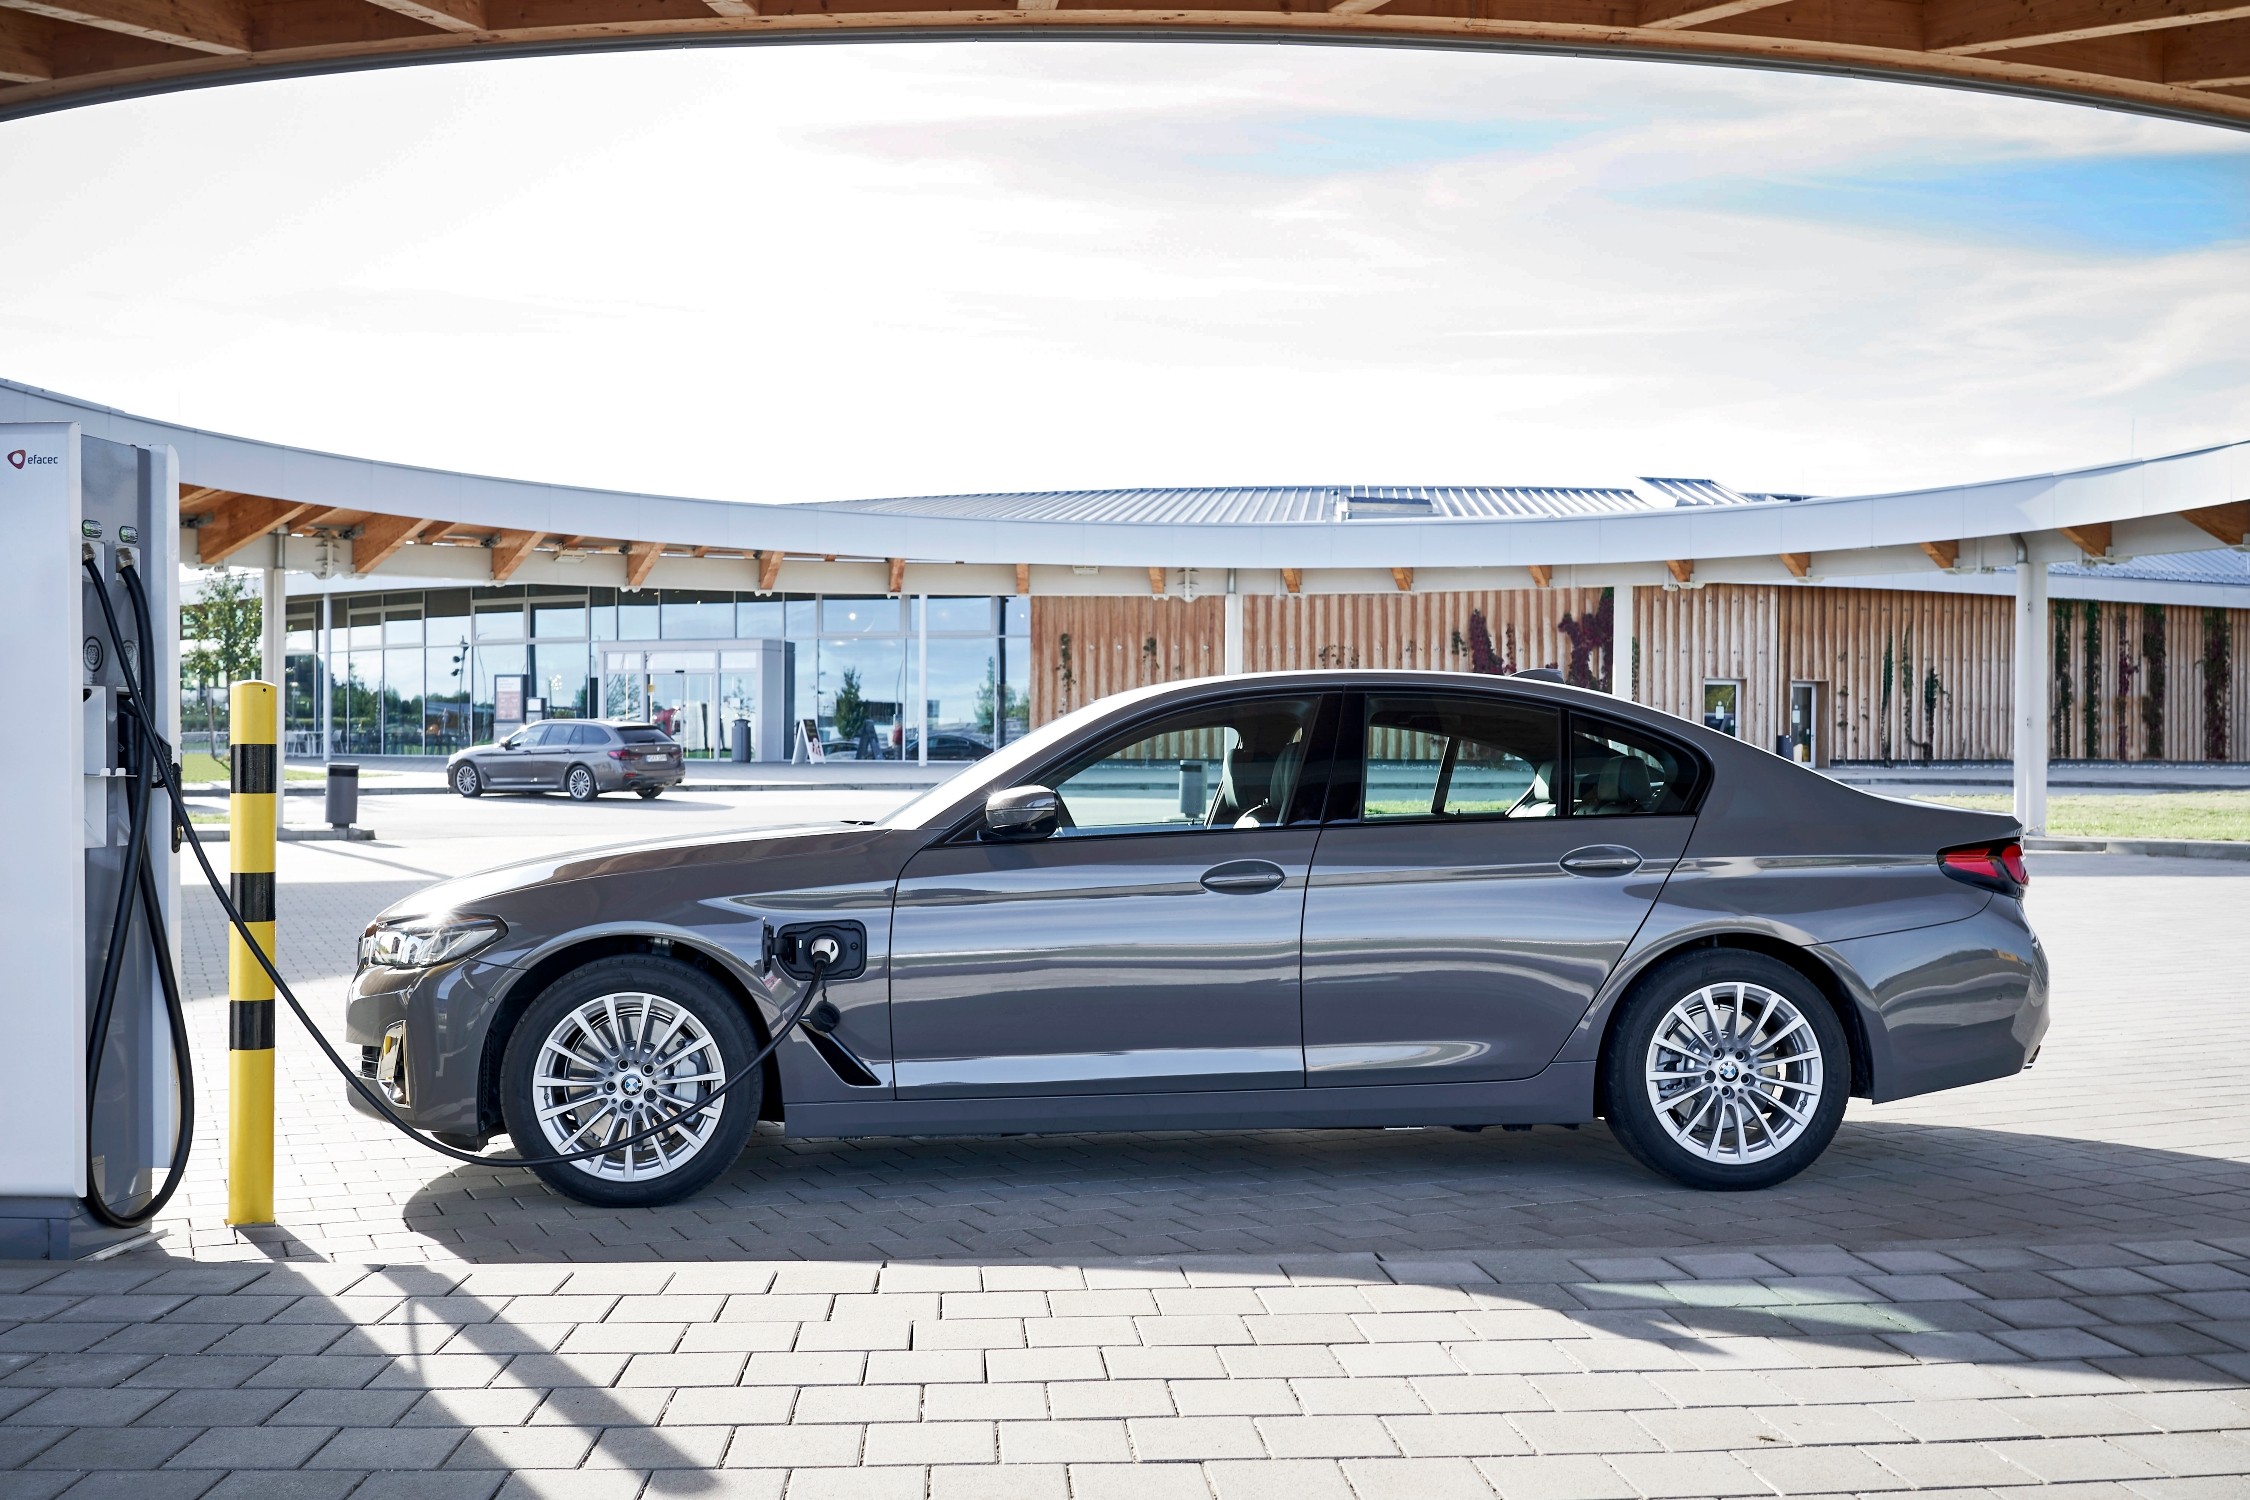 Autoregistratie met een kwart gedaald, BMW nummer één in België